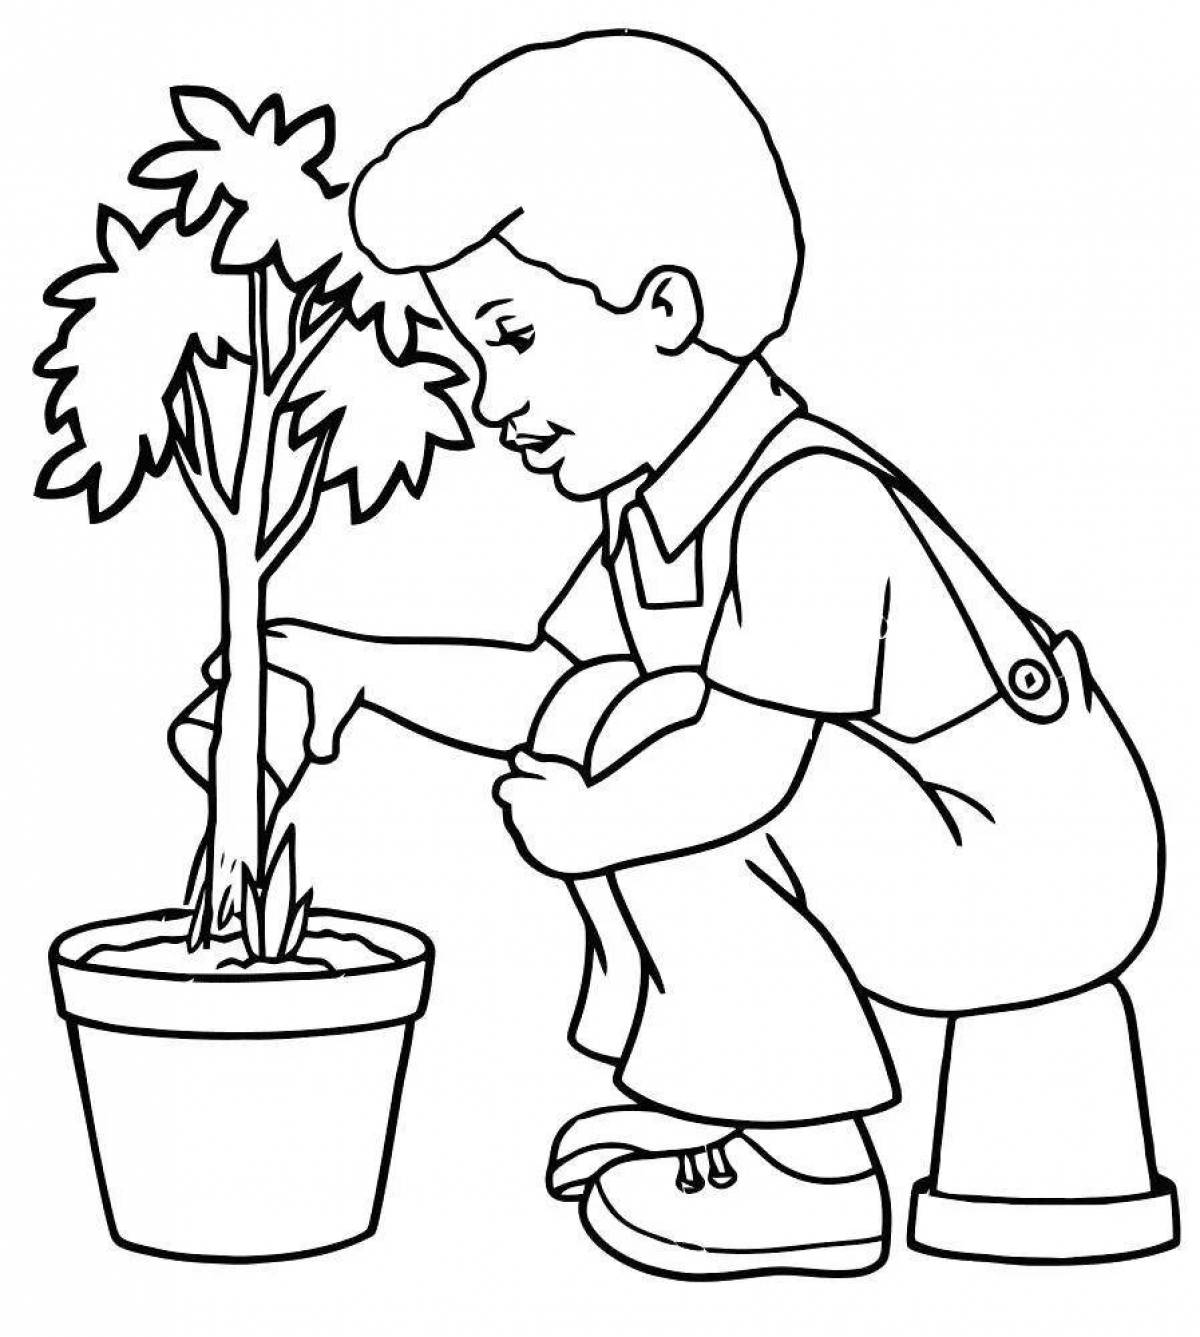 Plant coloring. Раскраска комнатные растения для детей. Растения. Раскраска. Комнатный цветок раскраска для детей. Растения раскраска для детей.